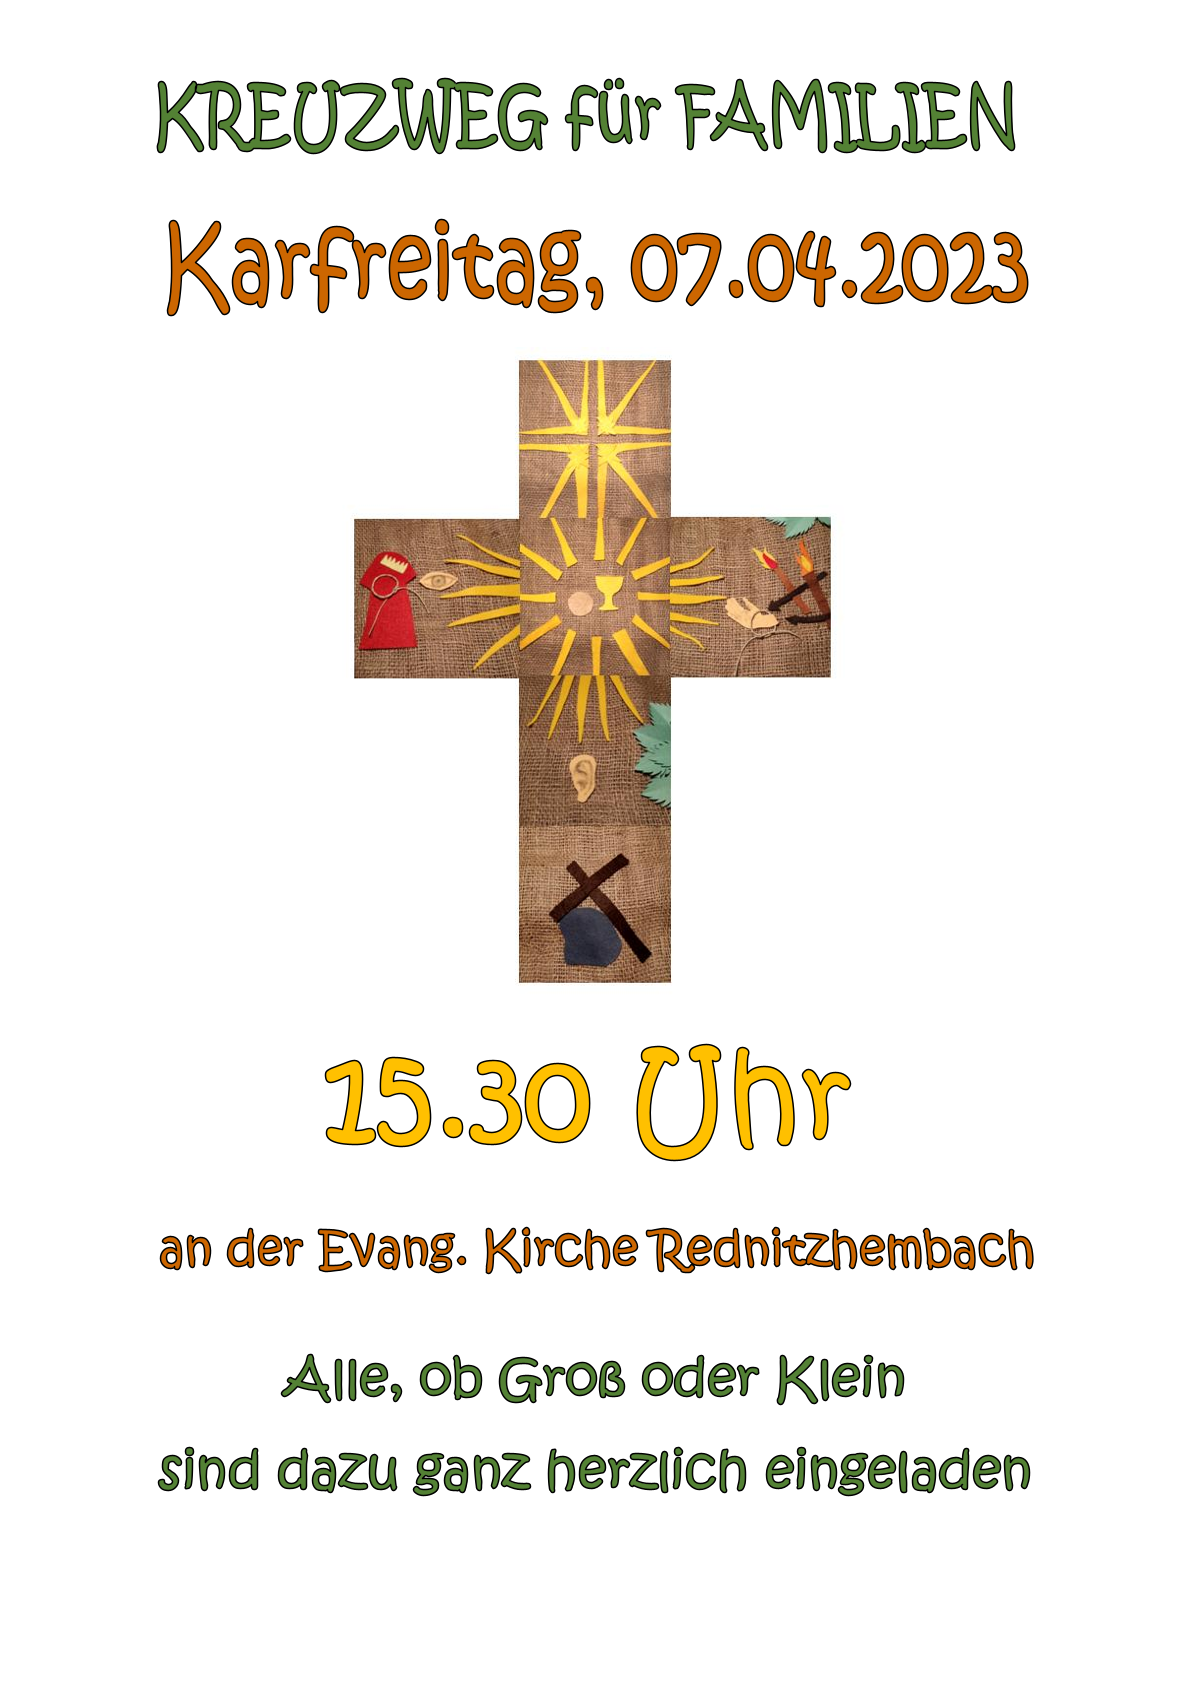 Einladung zum Kreuzweg für Familien am Karfreitag, 07.04.2023 um 15:30 Uhr an der Evang. Kirche Rednitzhembach